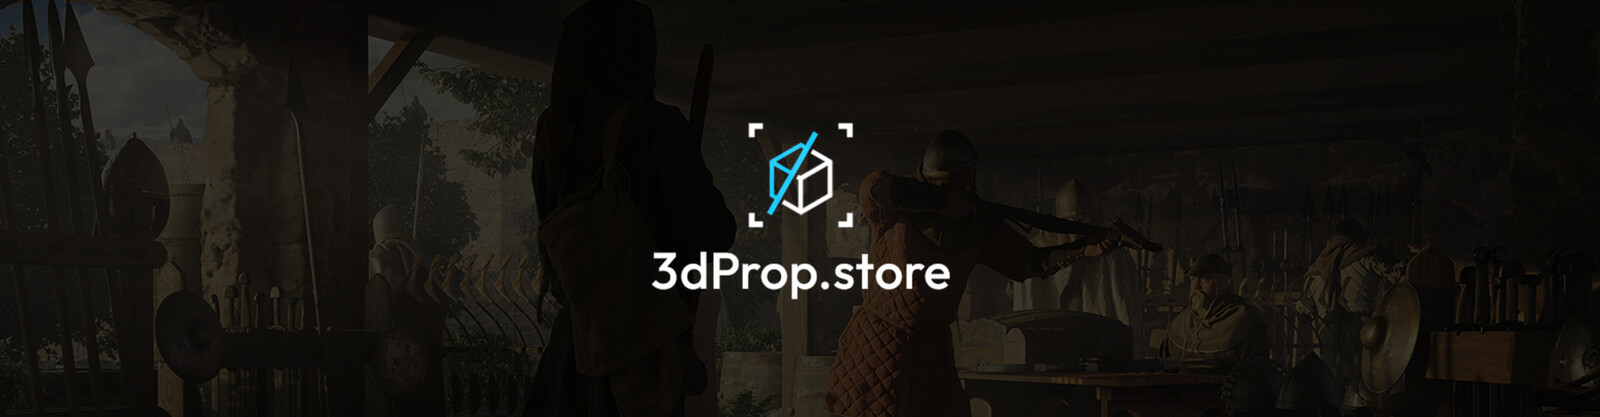 3dProp Store Marketing Art